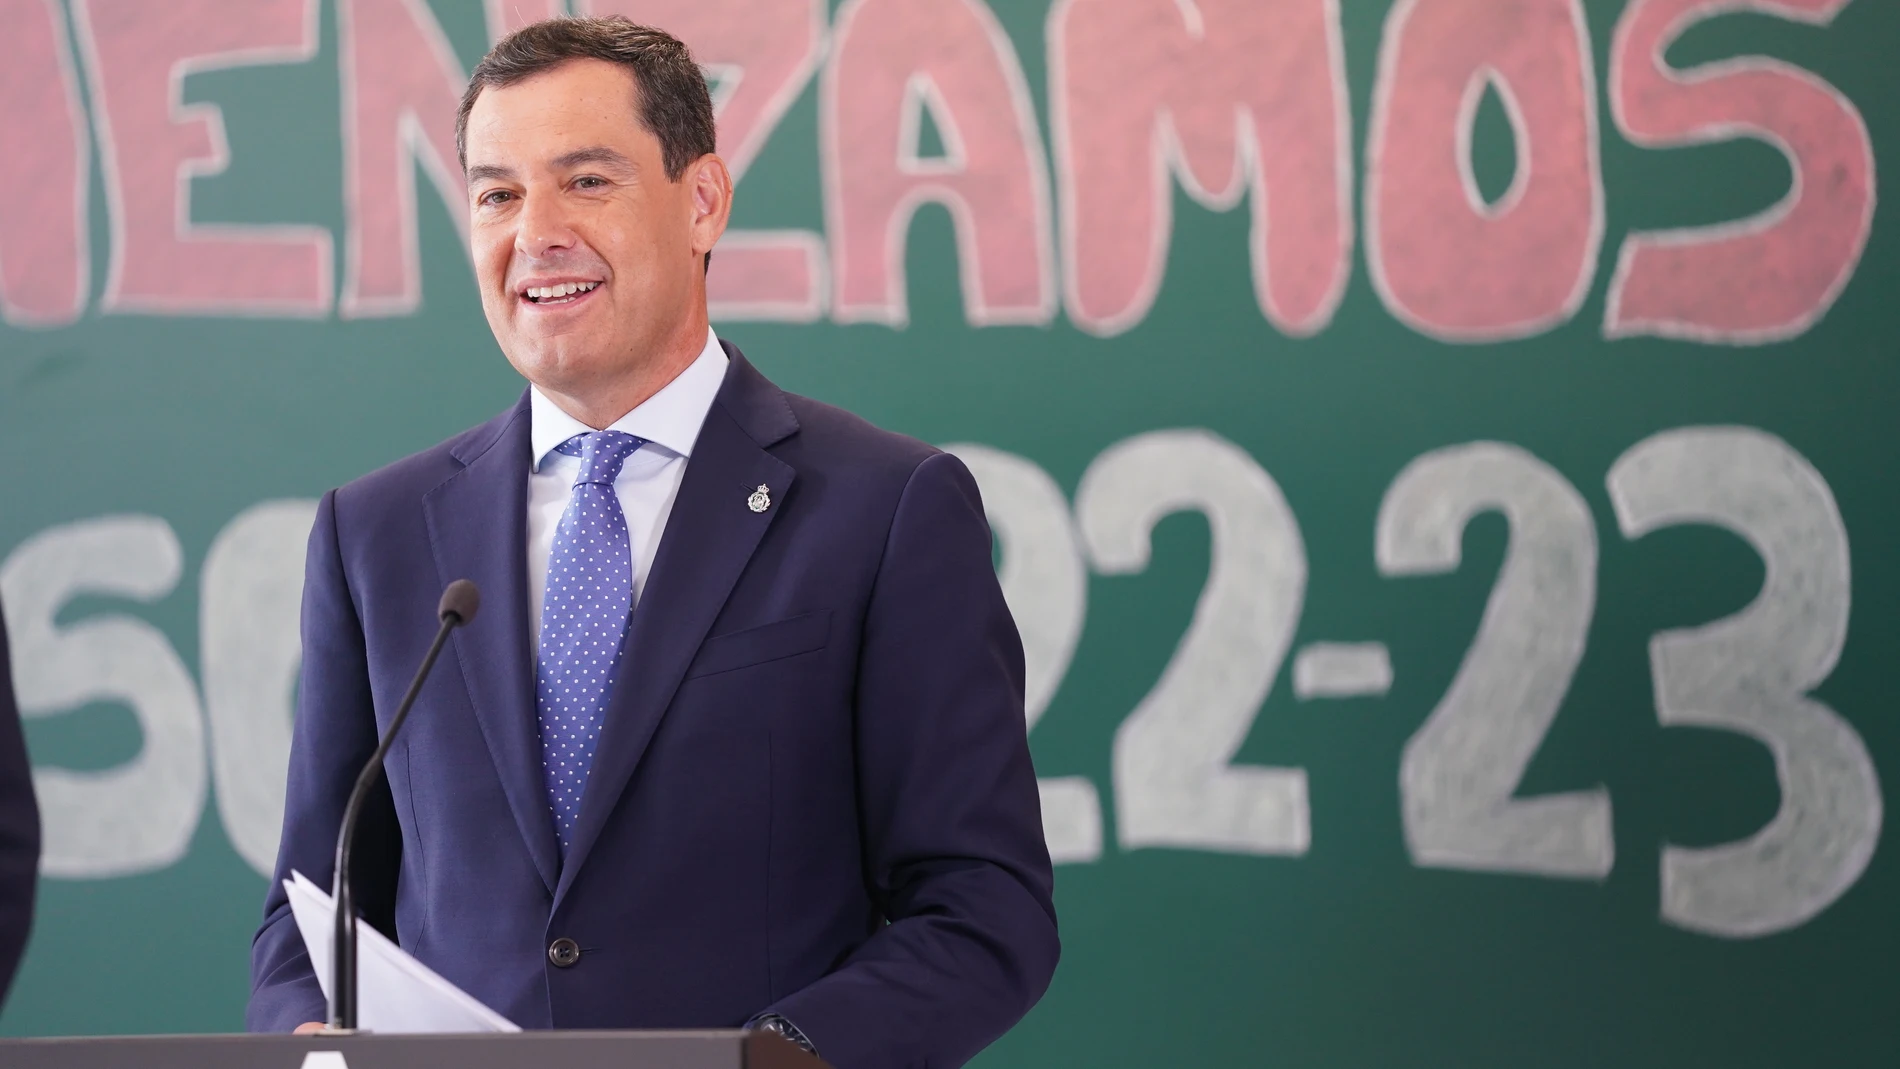 El presidente de la Junta de Andalucía, Juanma Moreno, este lunes en la inauguración del curso escolar en Alhendín (Granada). JUNTA DE ANDALUCÍA